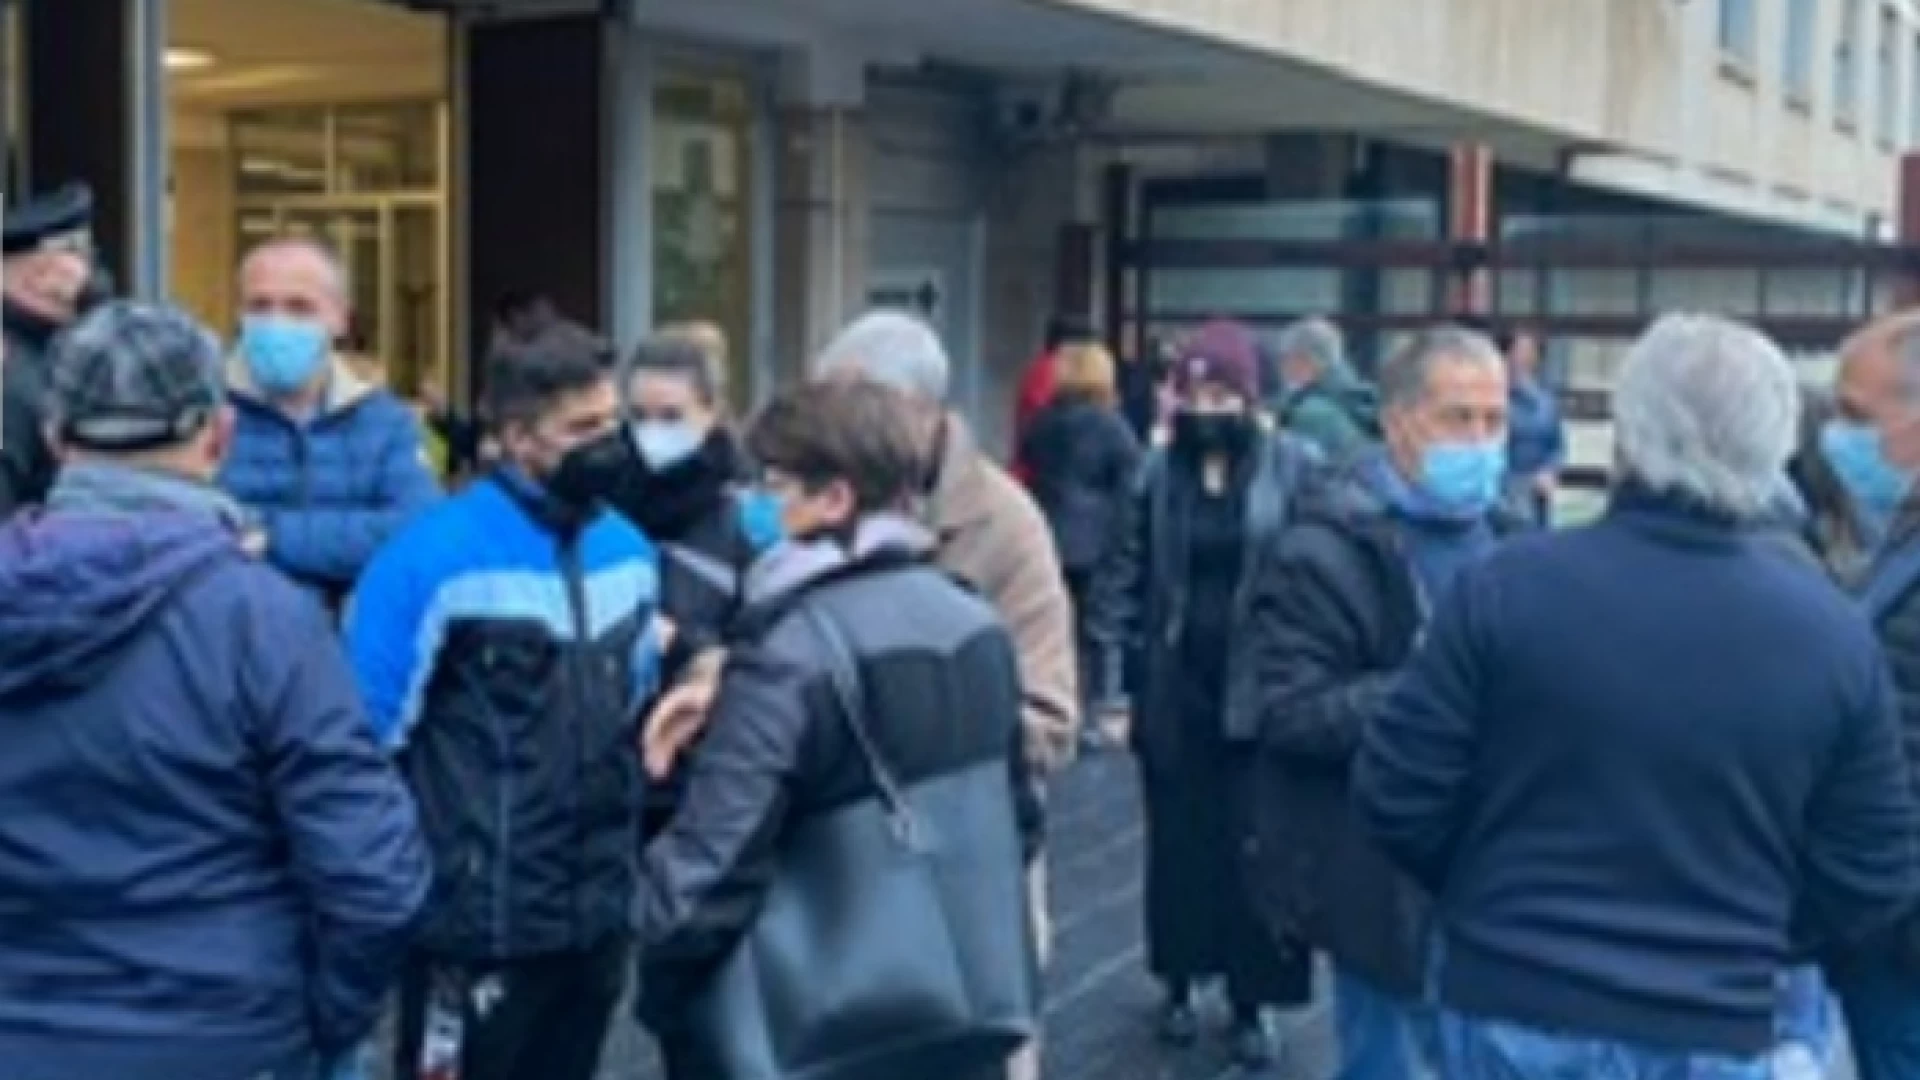 Frana di Castelpizzuto, cittadini infuriati protestano in via Berta ad Isernia